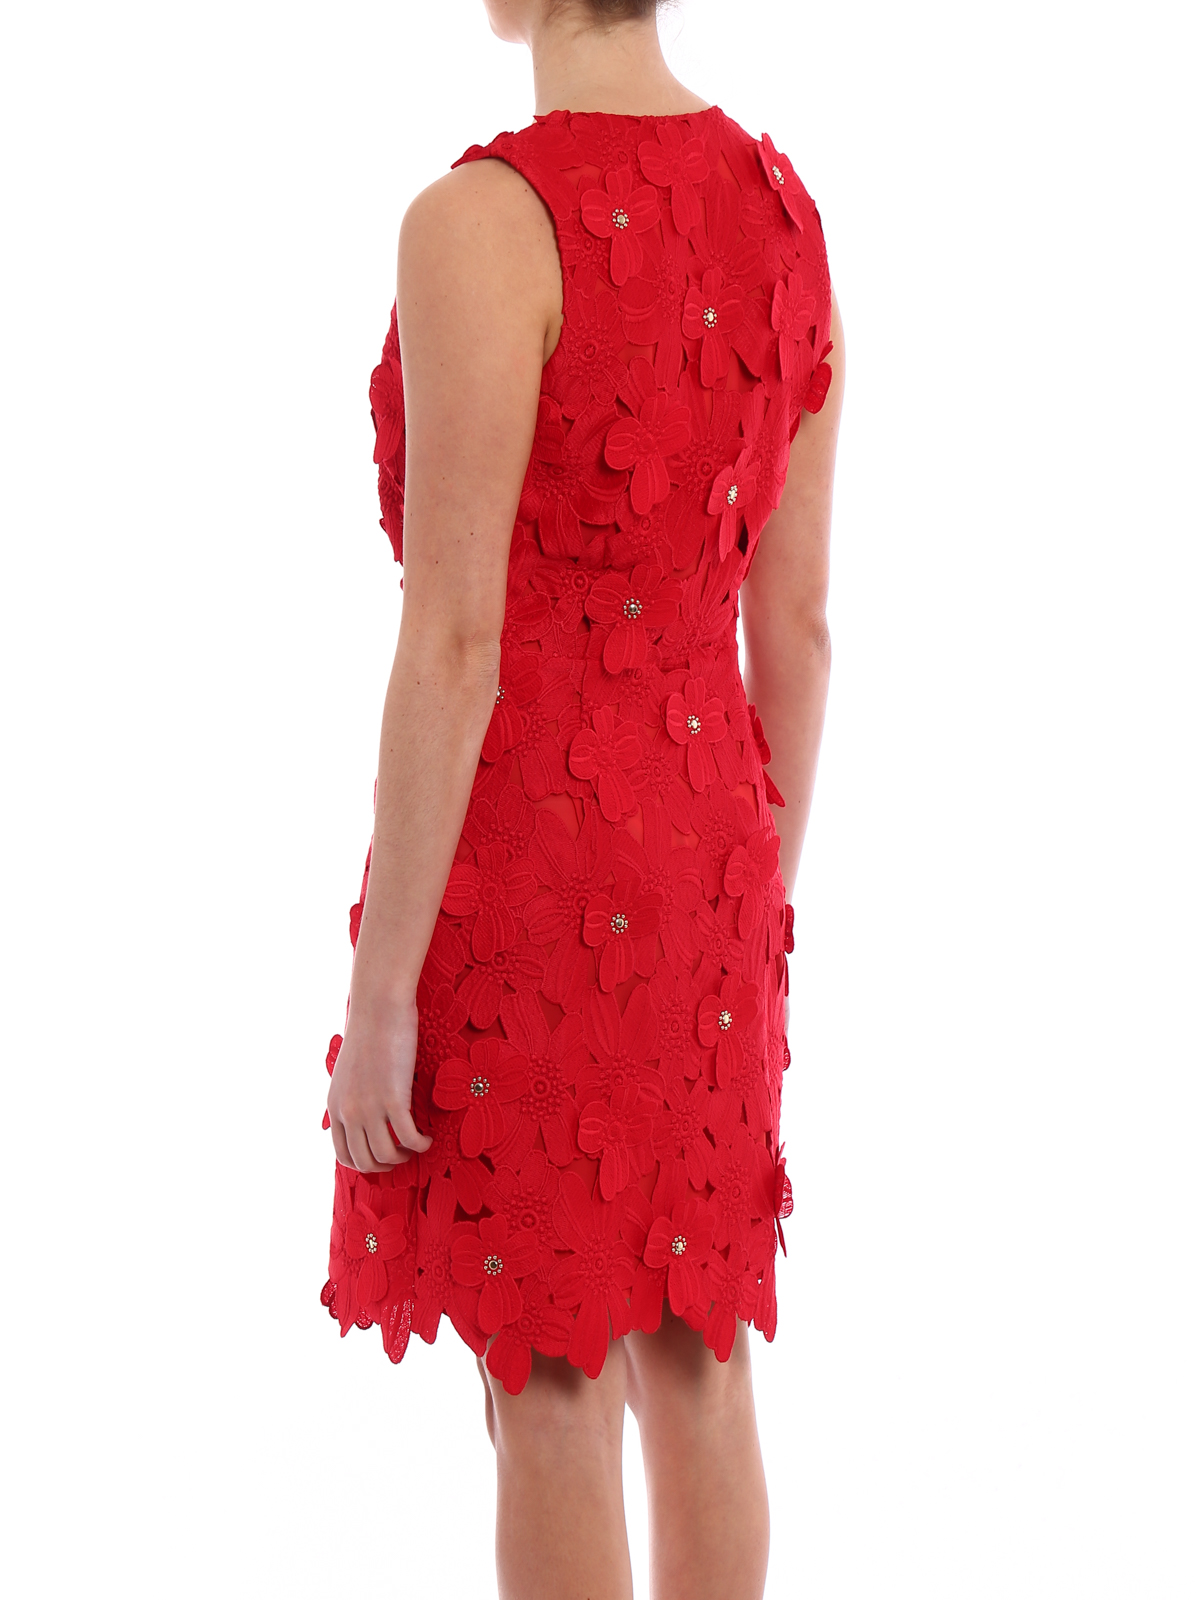 Michael Kors - Floral applique lace dress - cocktail dresses ...